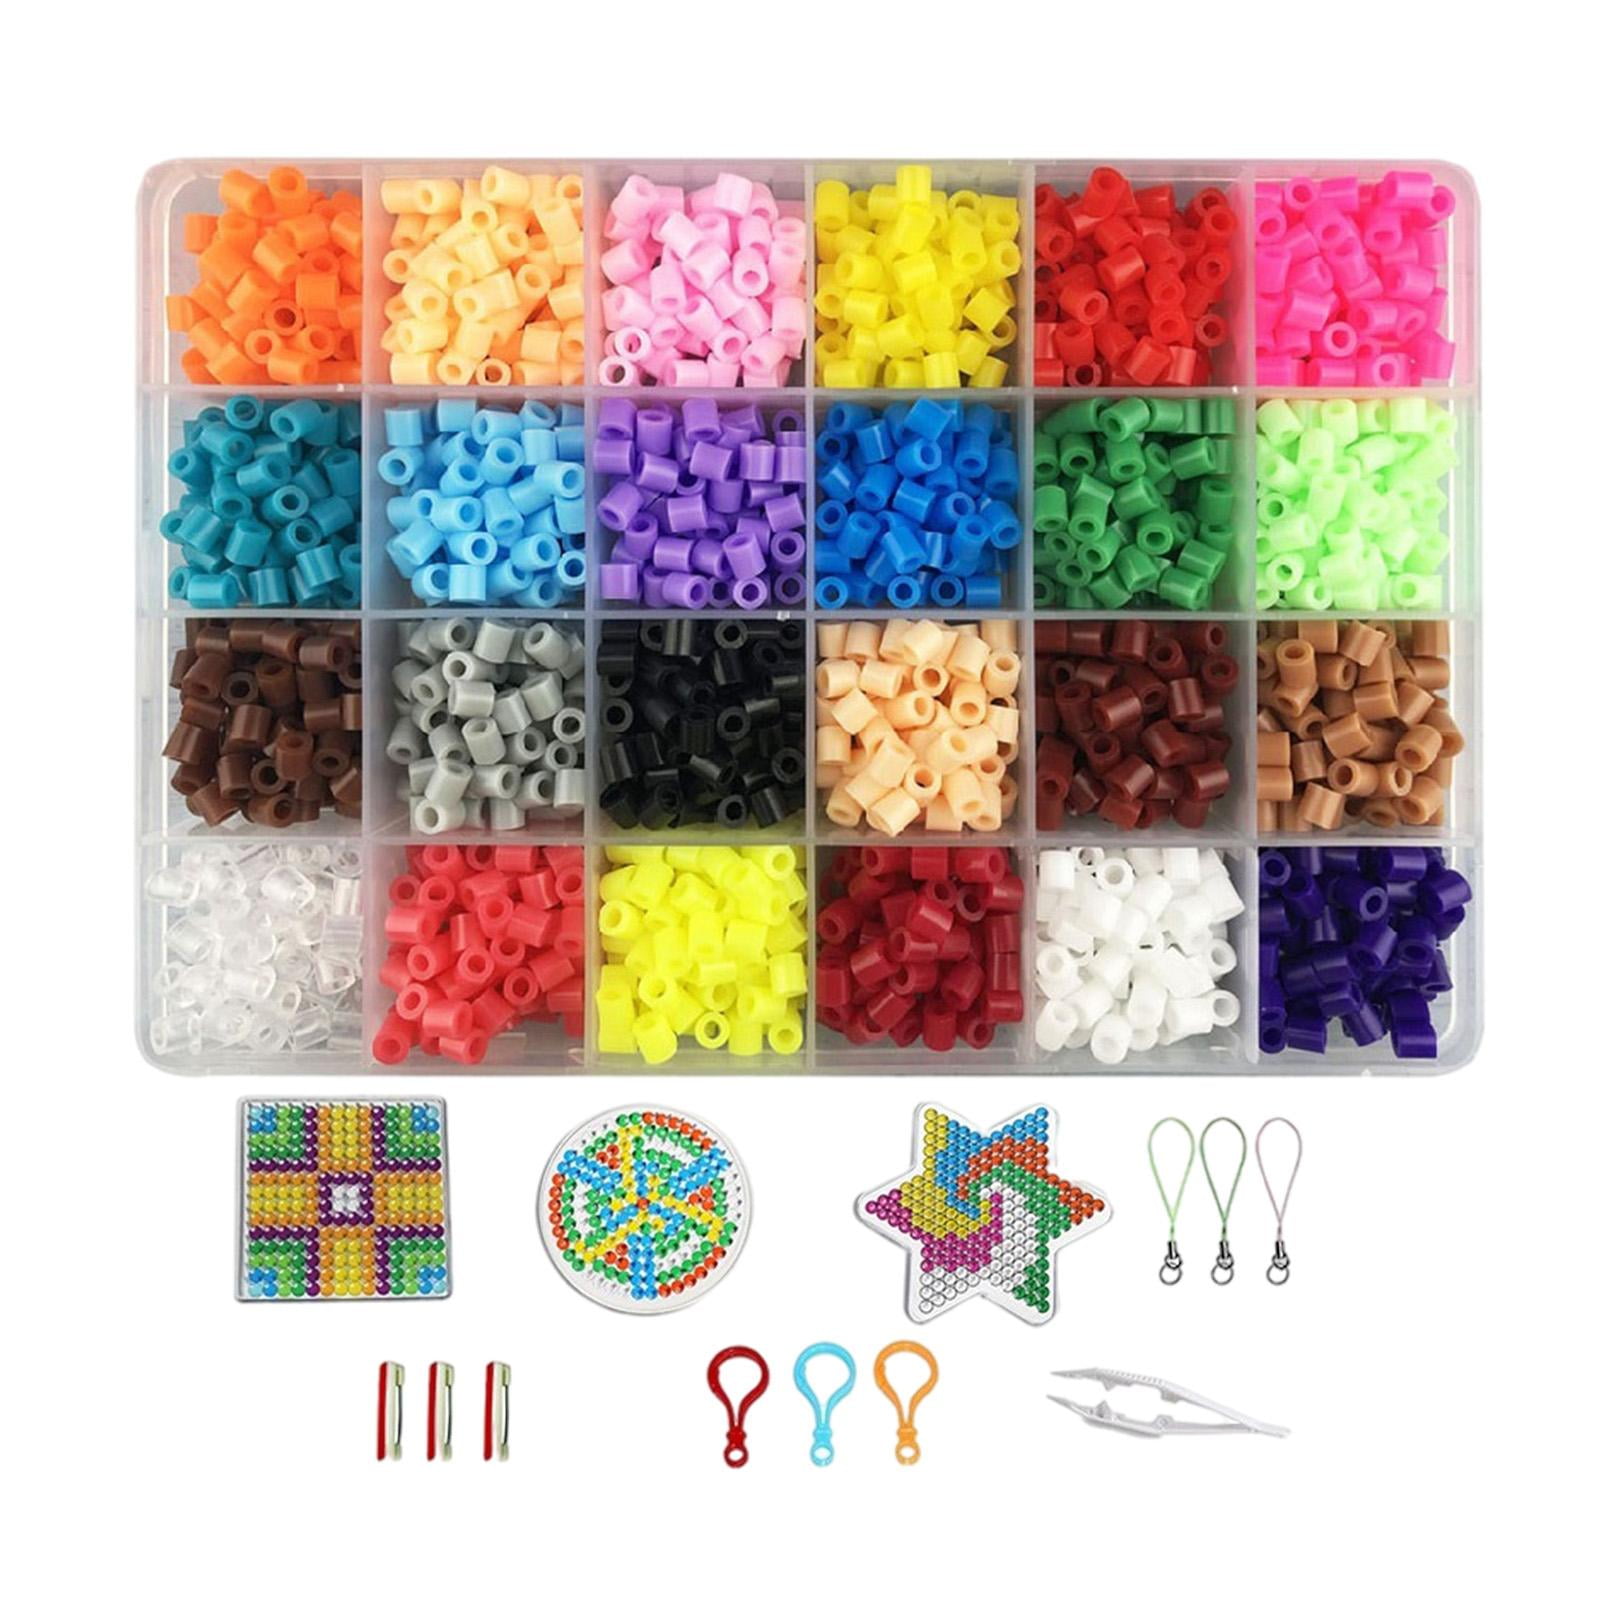 Buy Pixel Craft with Perler Beads.. in Bulk